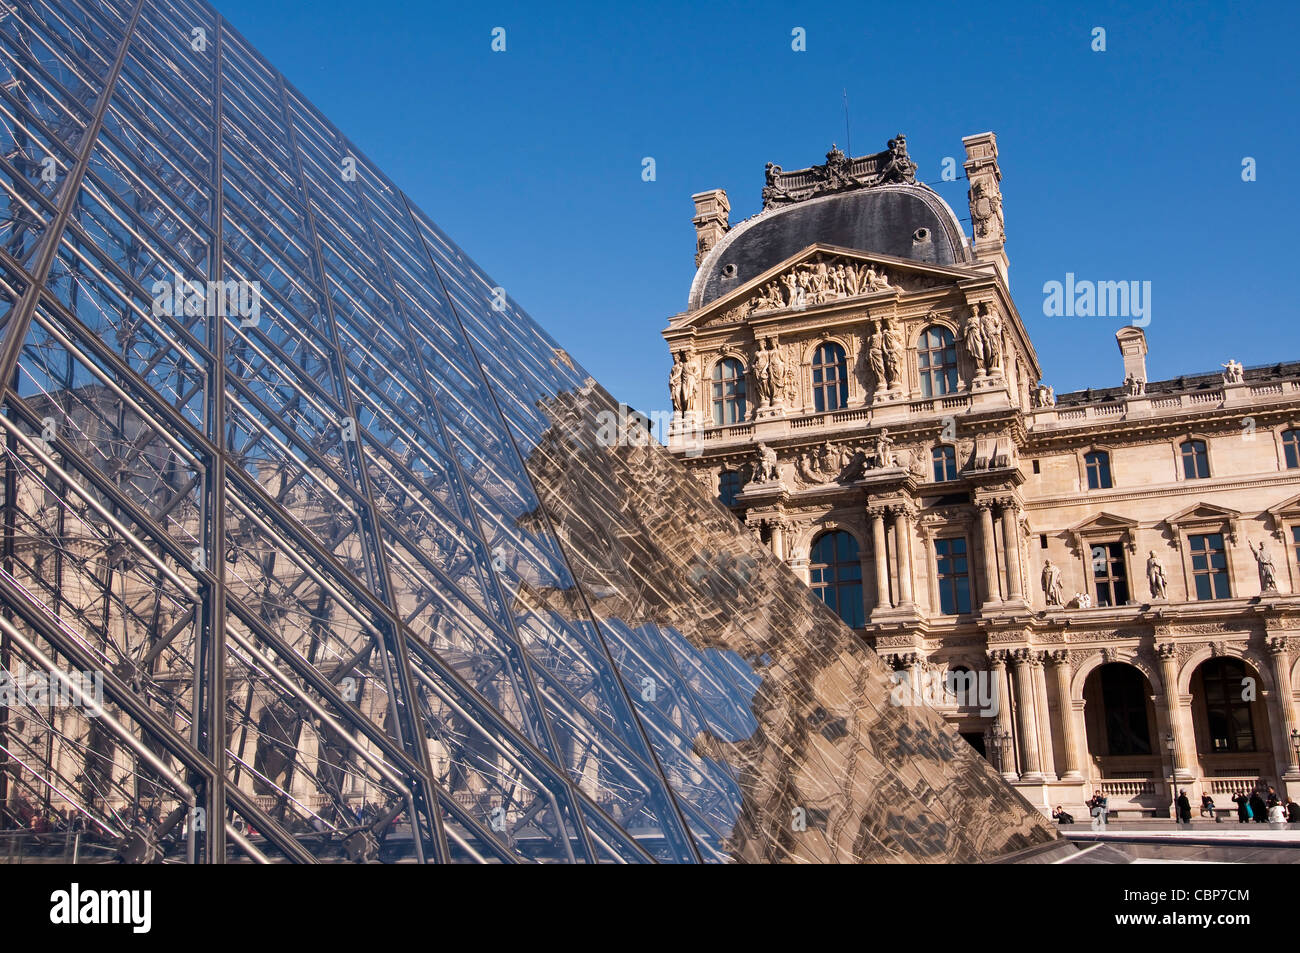 The Louvre museum - Paris (France) Stock Photo